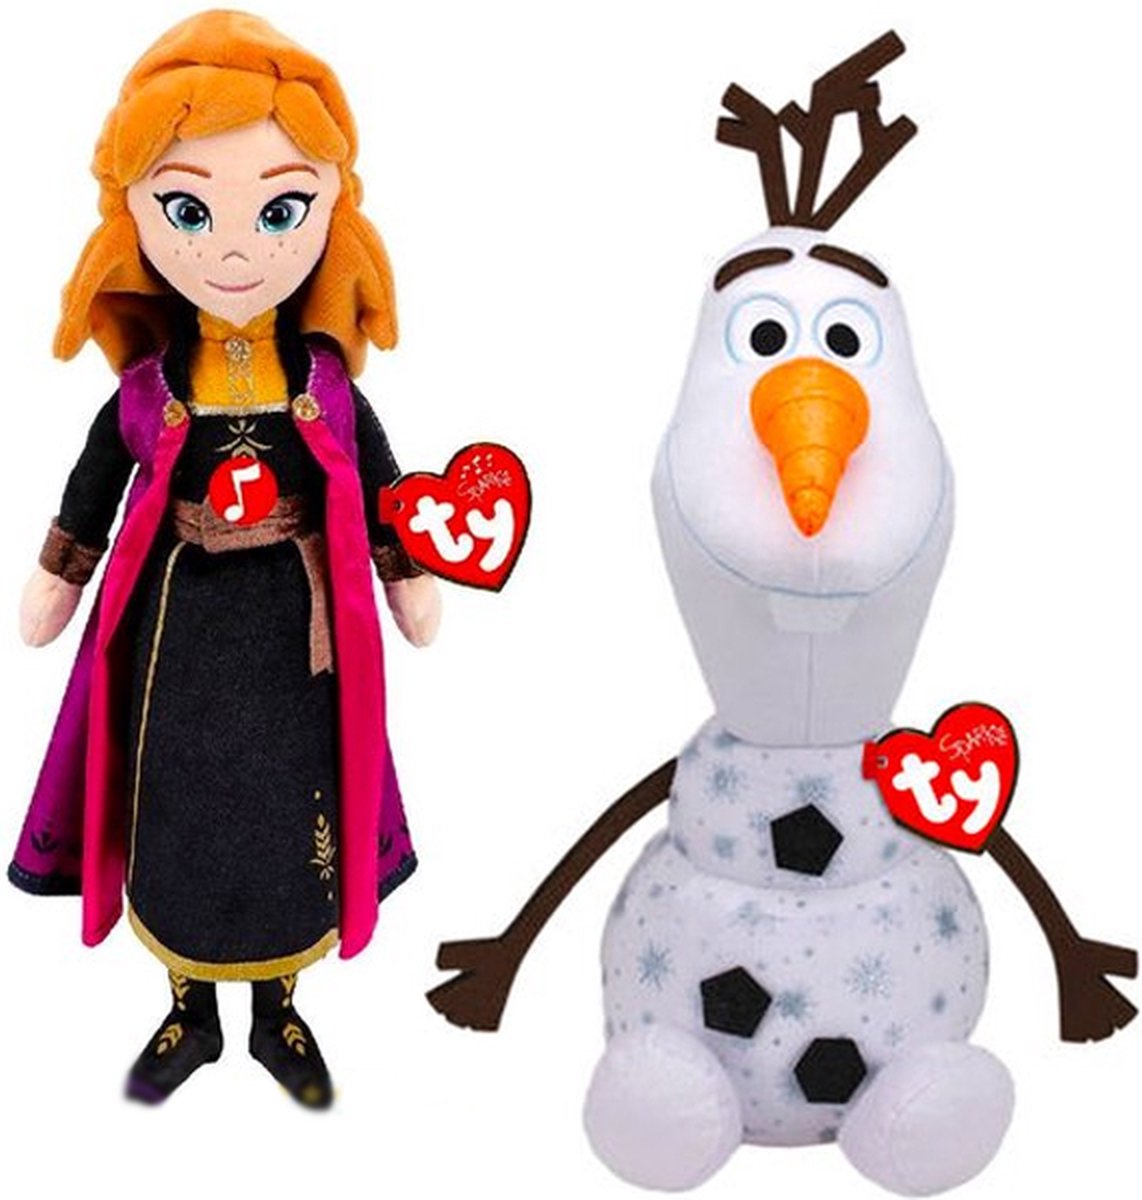 Olaf met Geluid XL 55 cm + Prinses Anna 24 cm Disney Frozen 2 Pluche Knuffel Set | Frozen Elsa Plush Toy | Speelgoed Knuffelpop voor kinderen jongens meisjes